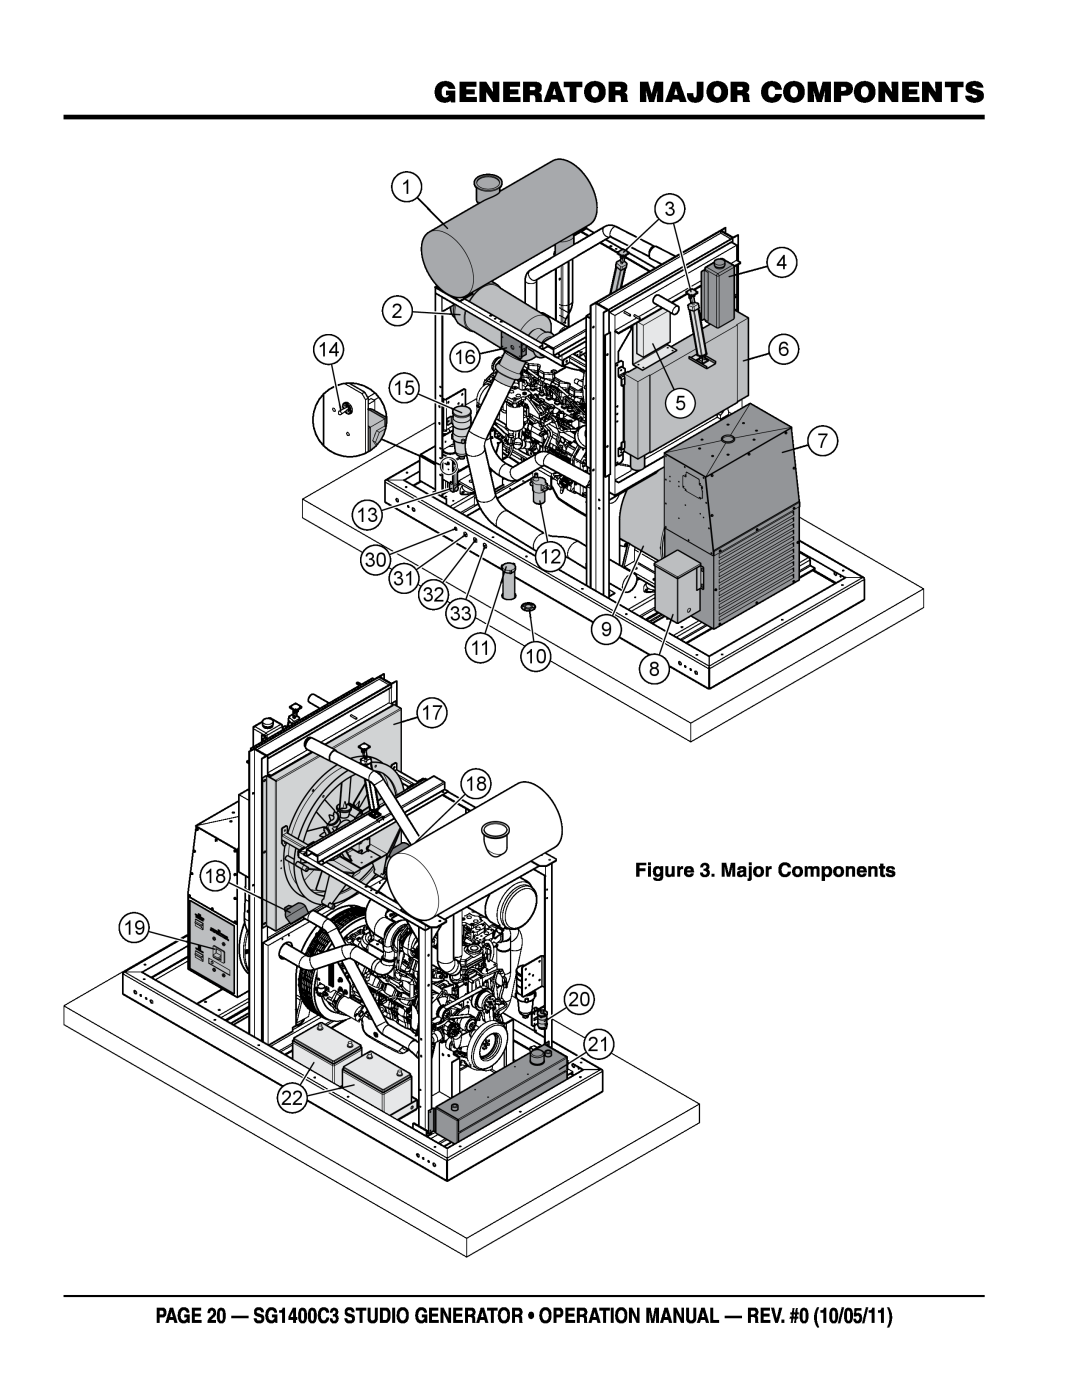 Multiquip SG1400C3 operation manual Generator MAJOR COMPONENTS, Major Components 